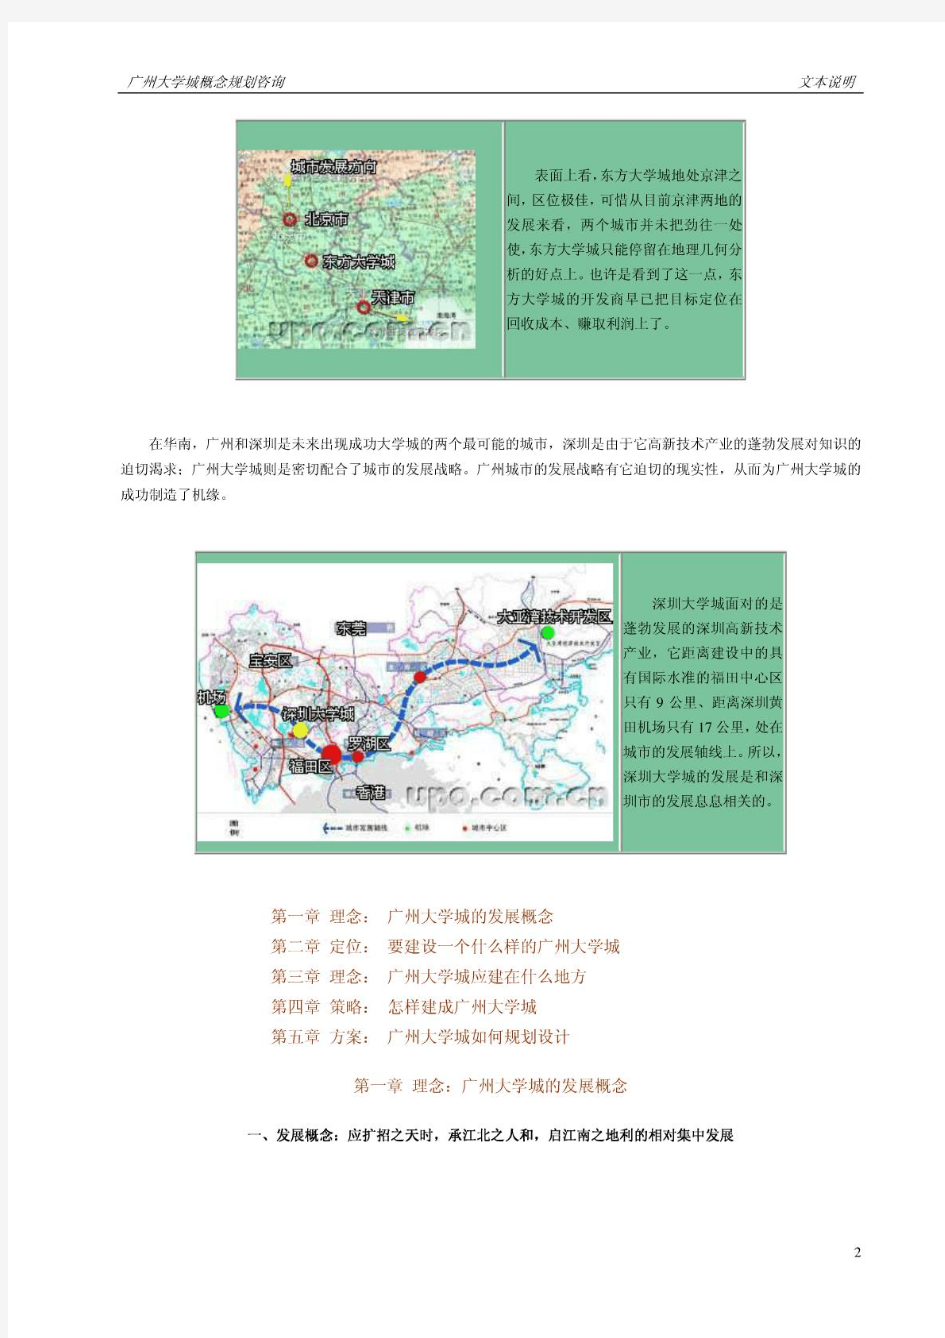 大学城概念规划-中国城市规划设计研究院